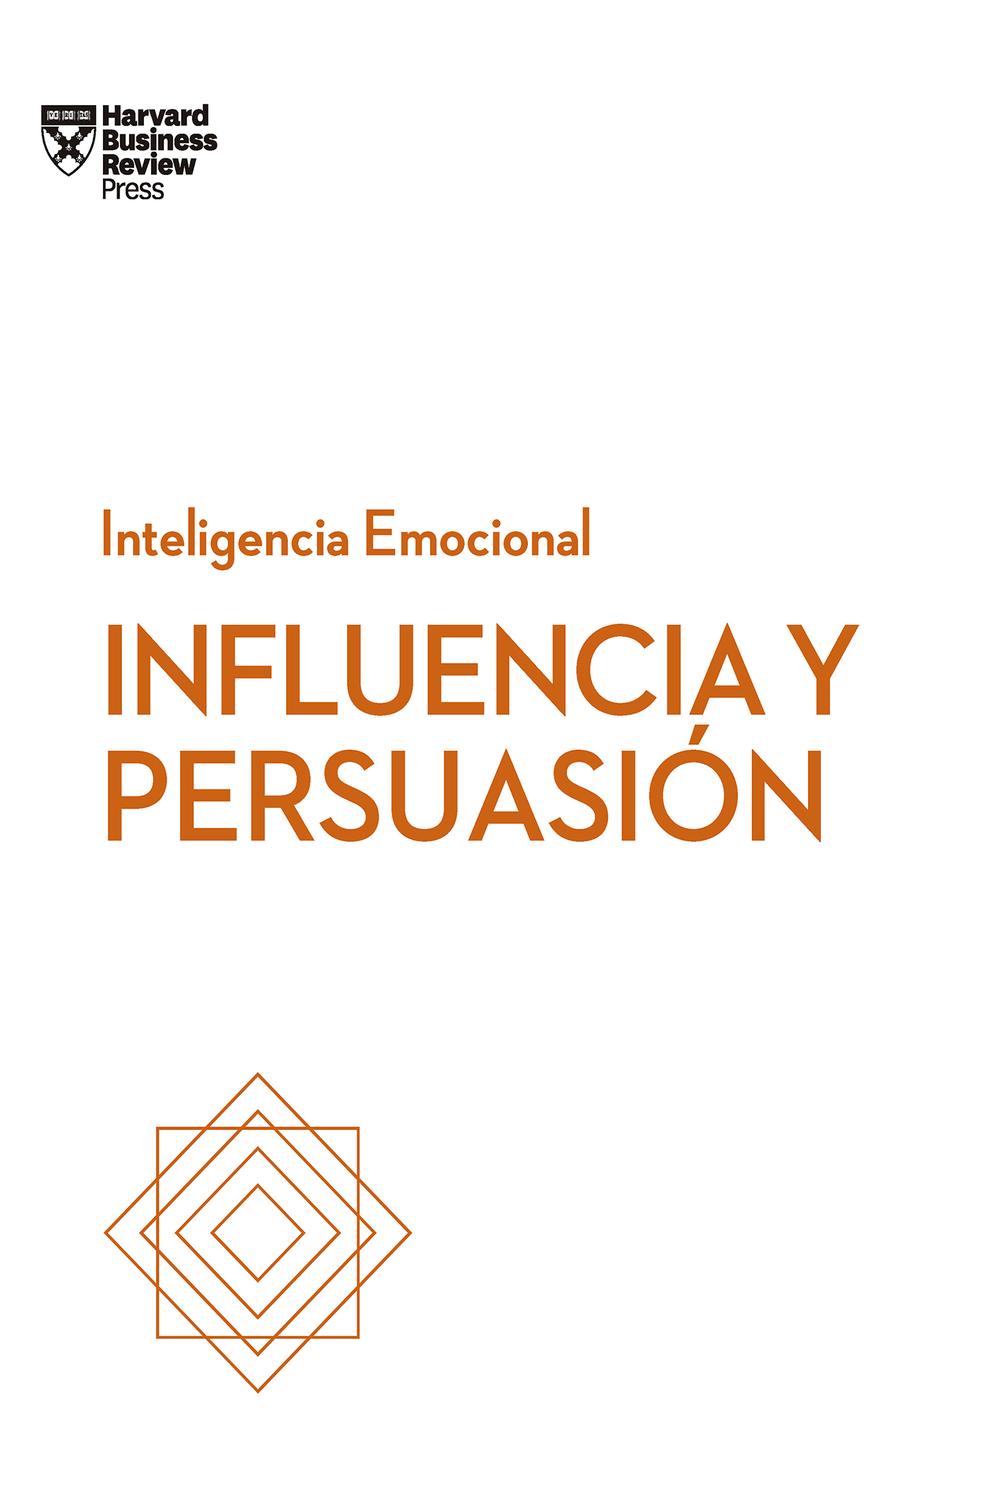 PDF] Influencia y persuasión by Harvard Business Review eBook | Perlego